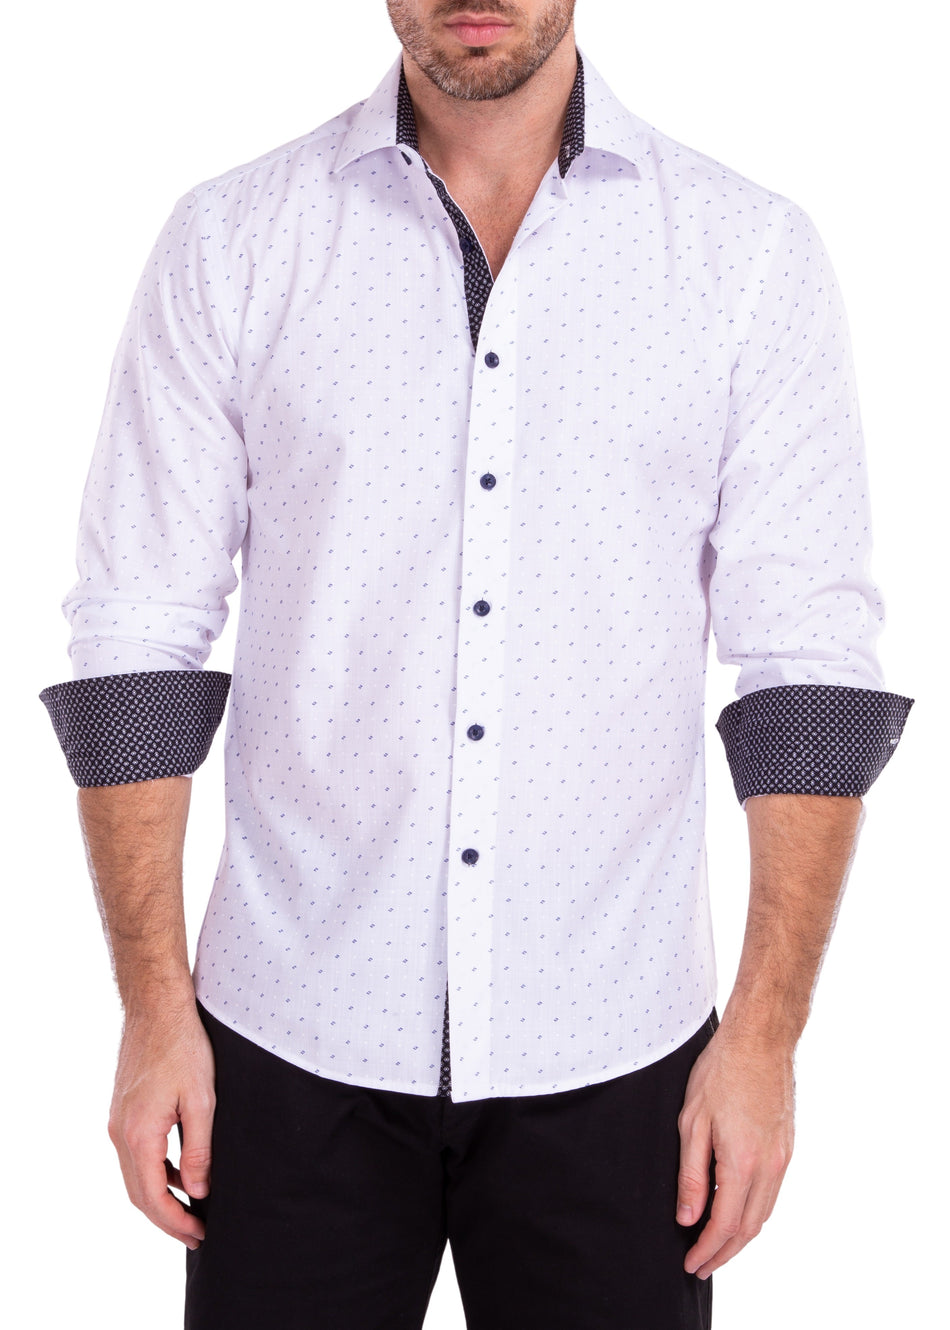 222242 - White Button Up Long Sleeve Dress Shirt